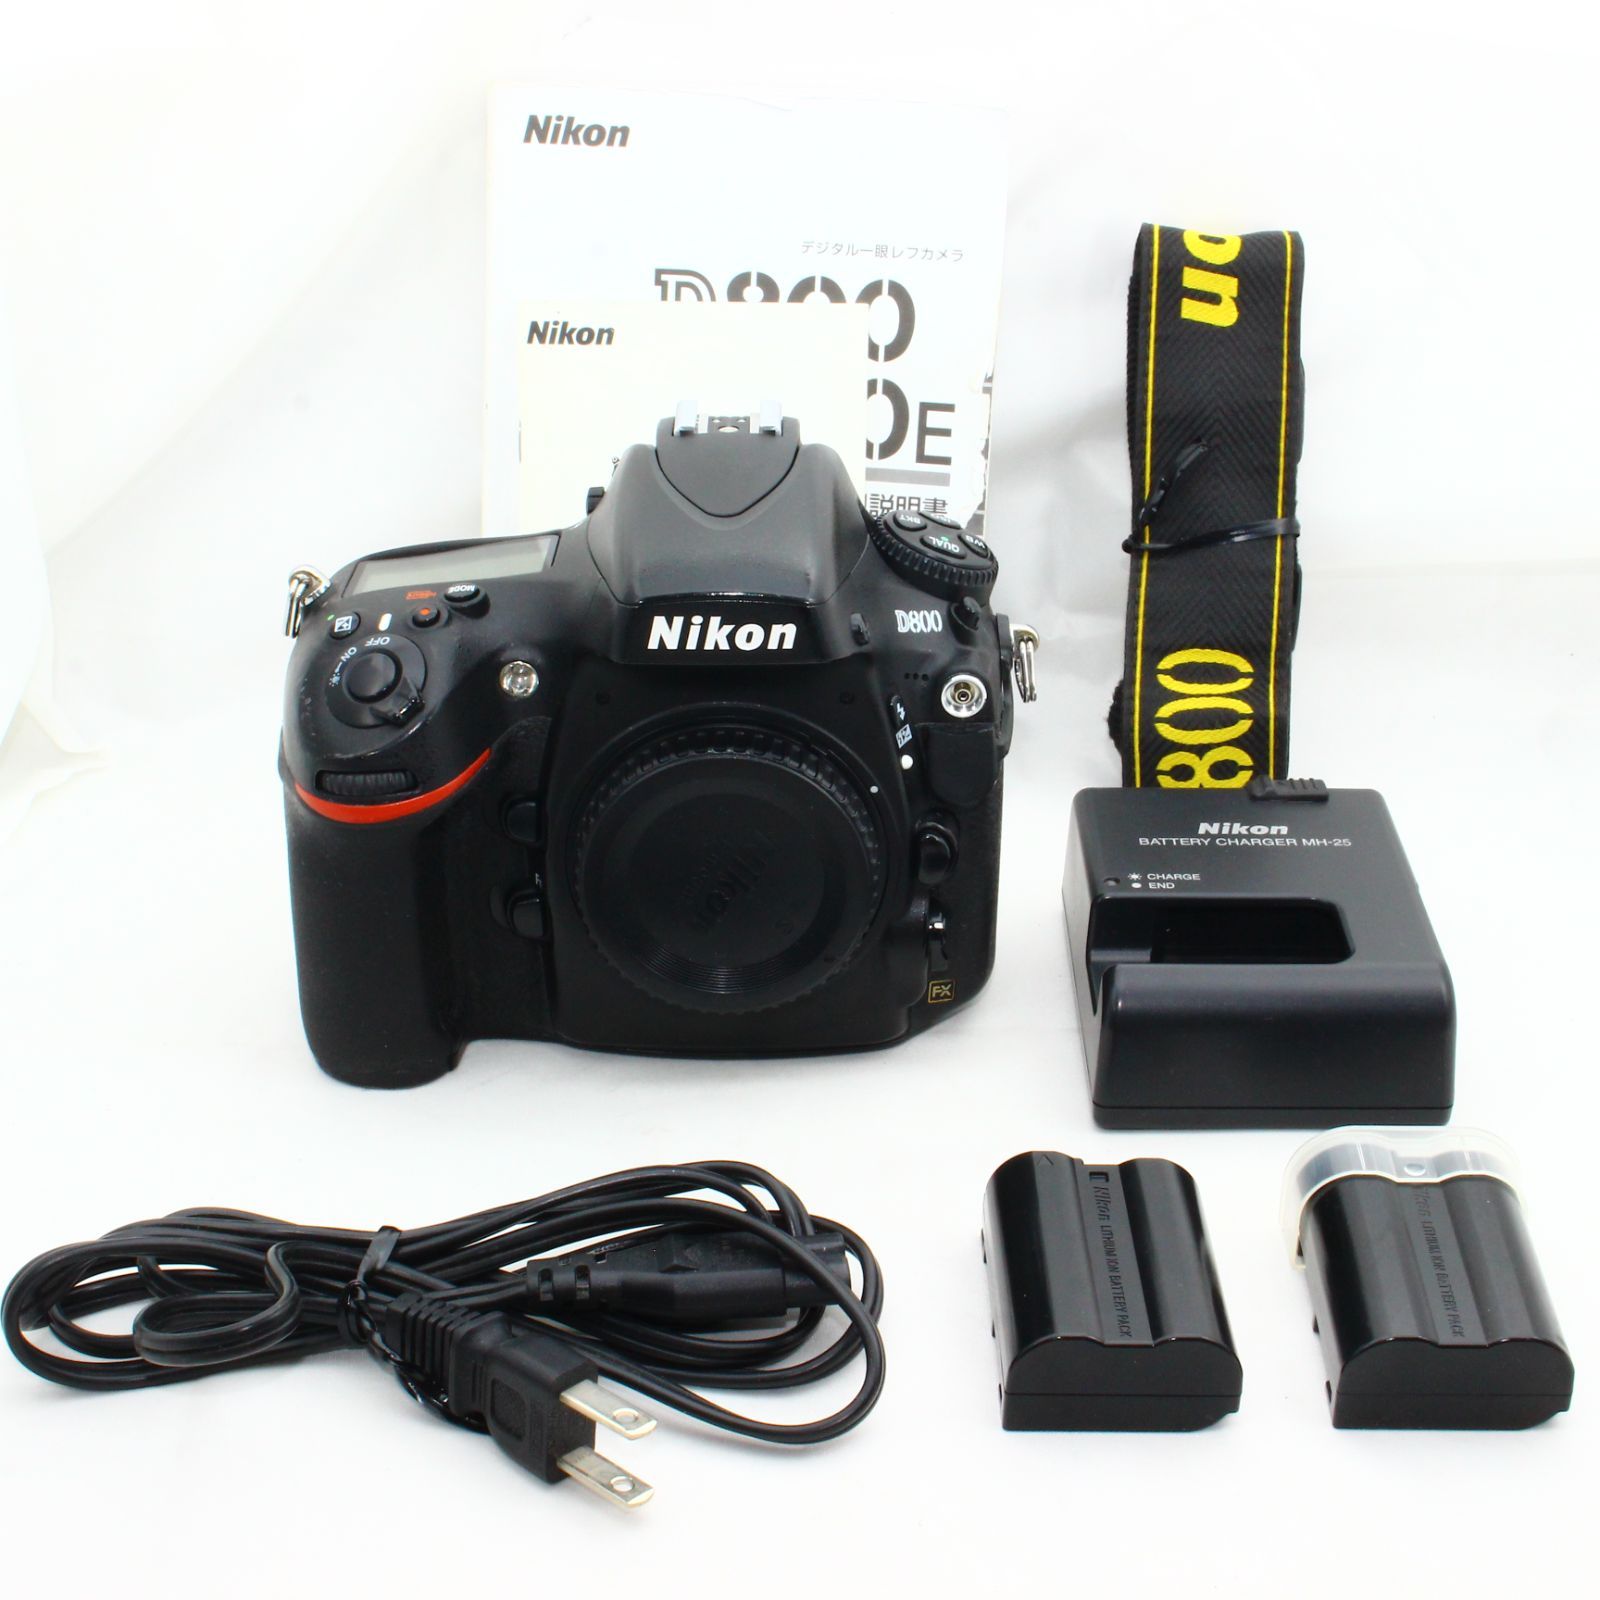 決算セール Nikon デジタル一眼レフカメラ D800 ボディー D800 | tonky.jp